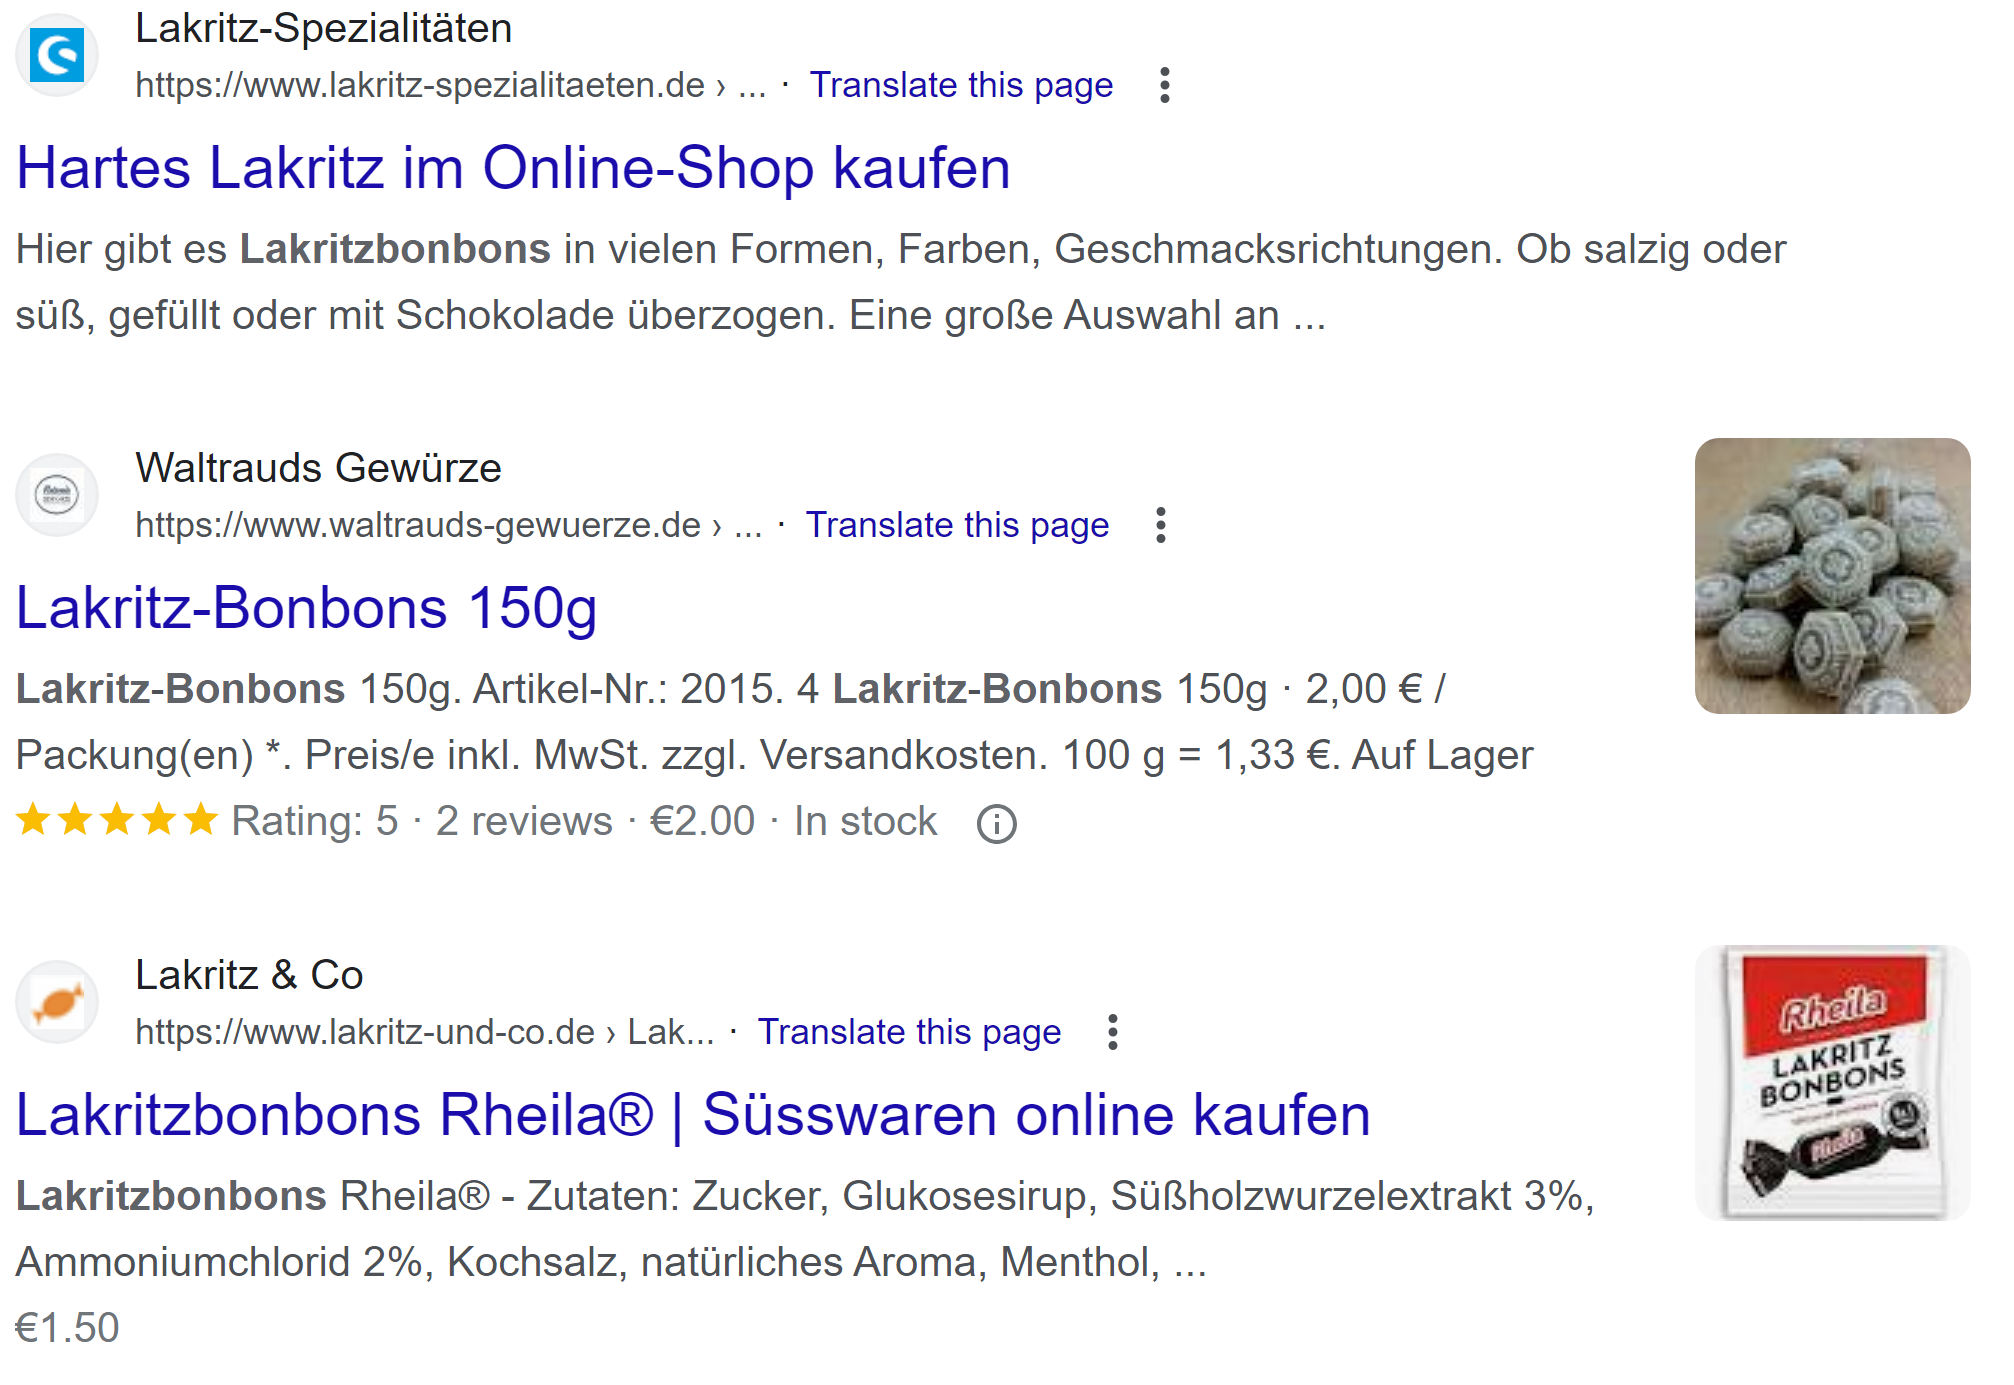 Google: Suchergebnisse für Lakritzbonbons mit Thumbnails normaler Größe